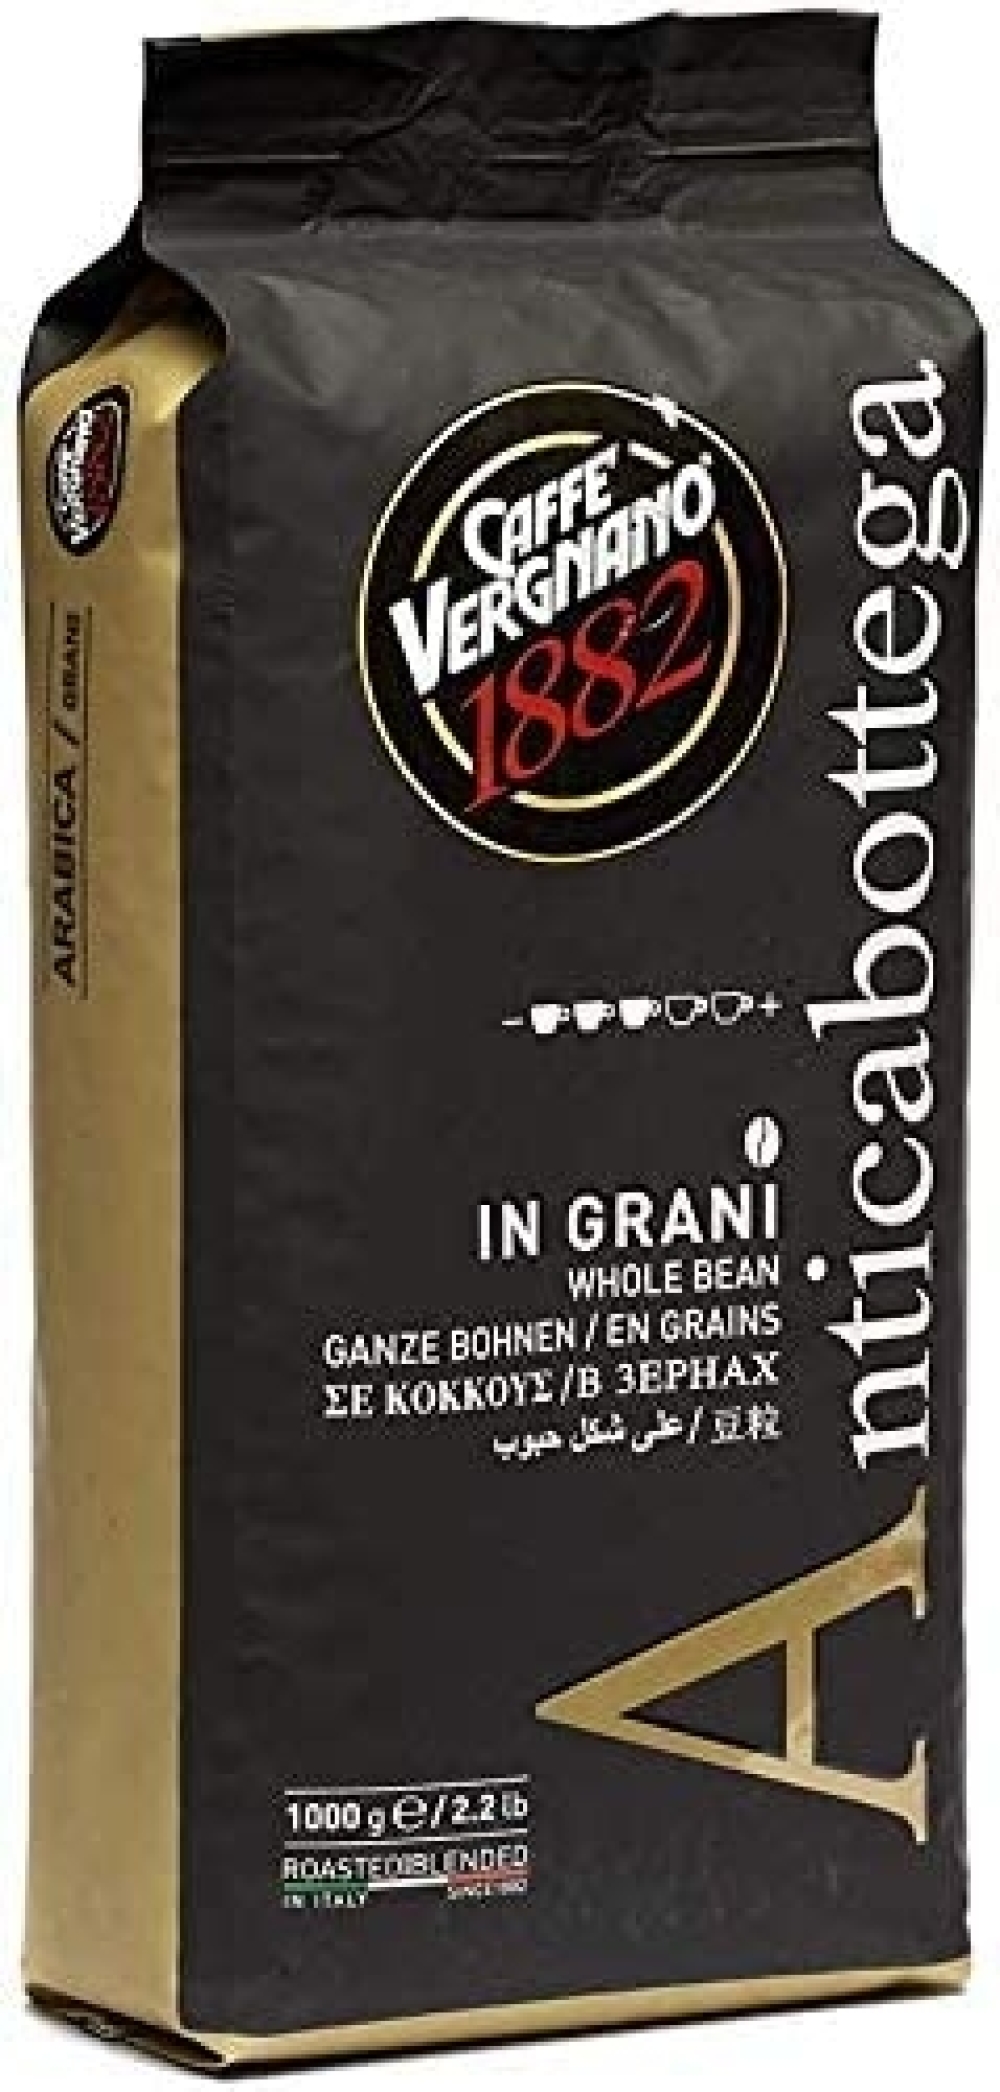 Kaffebønner Antica Bottega 1 kg - Vergnano 100% Arabica Antica Bottega 1000g x 6 beans 048 